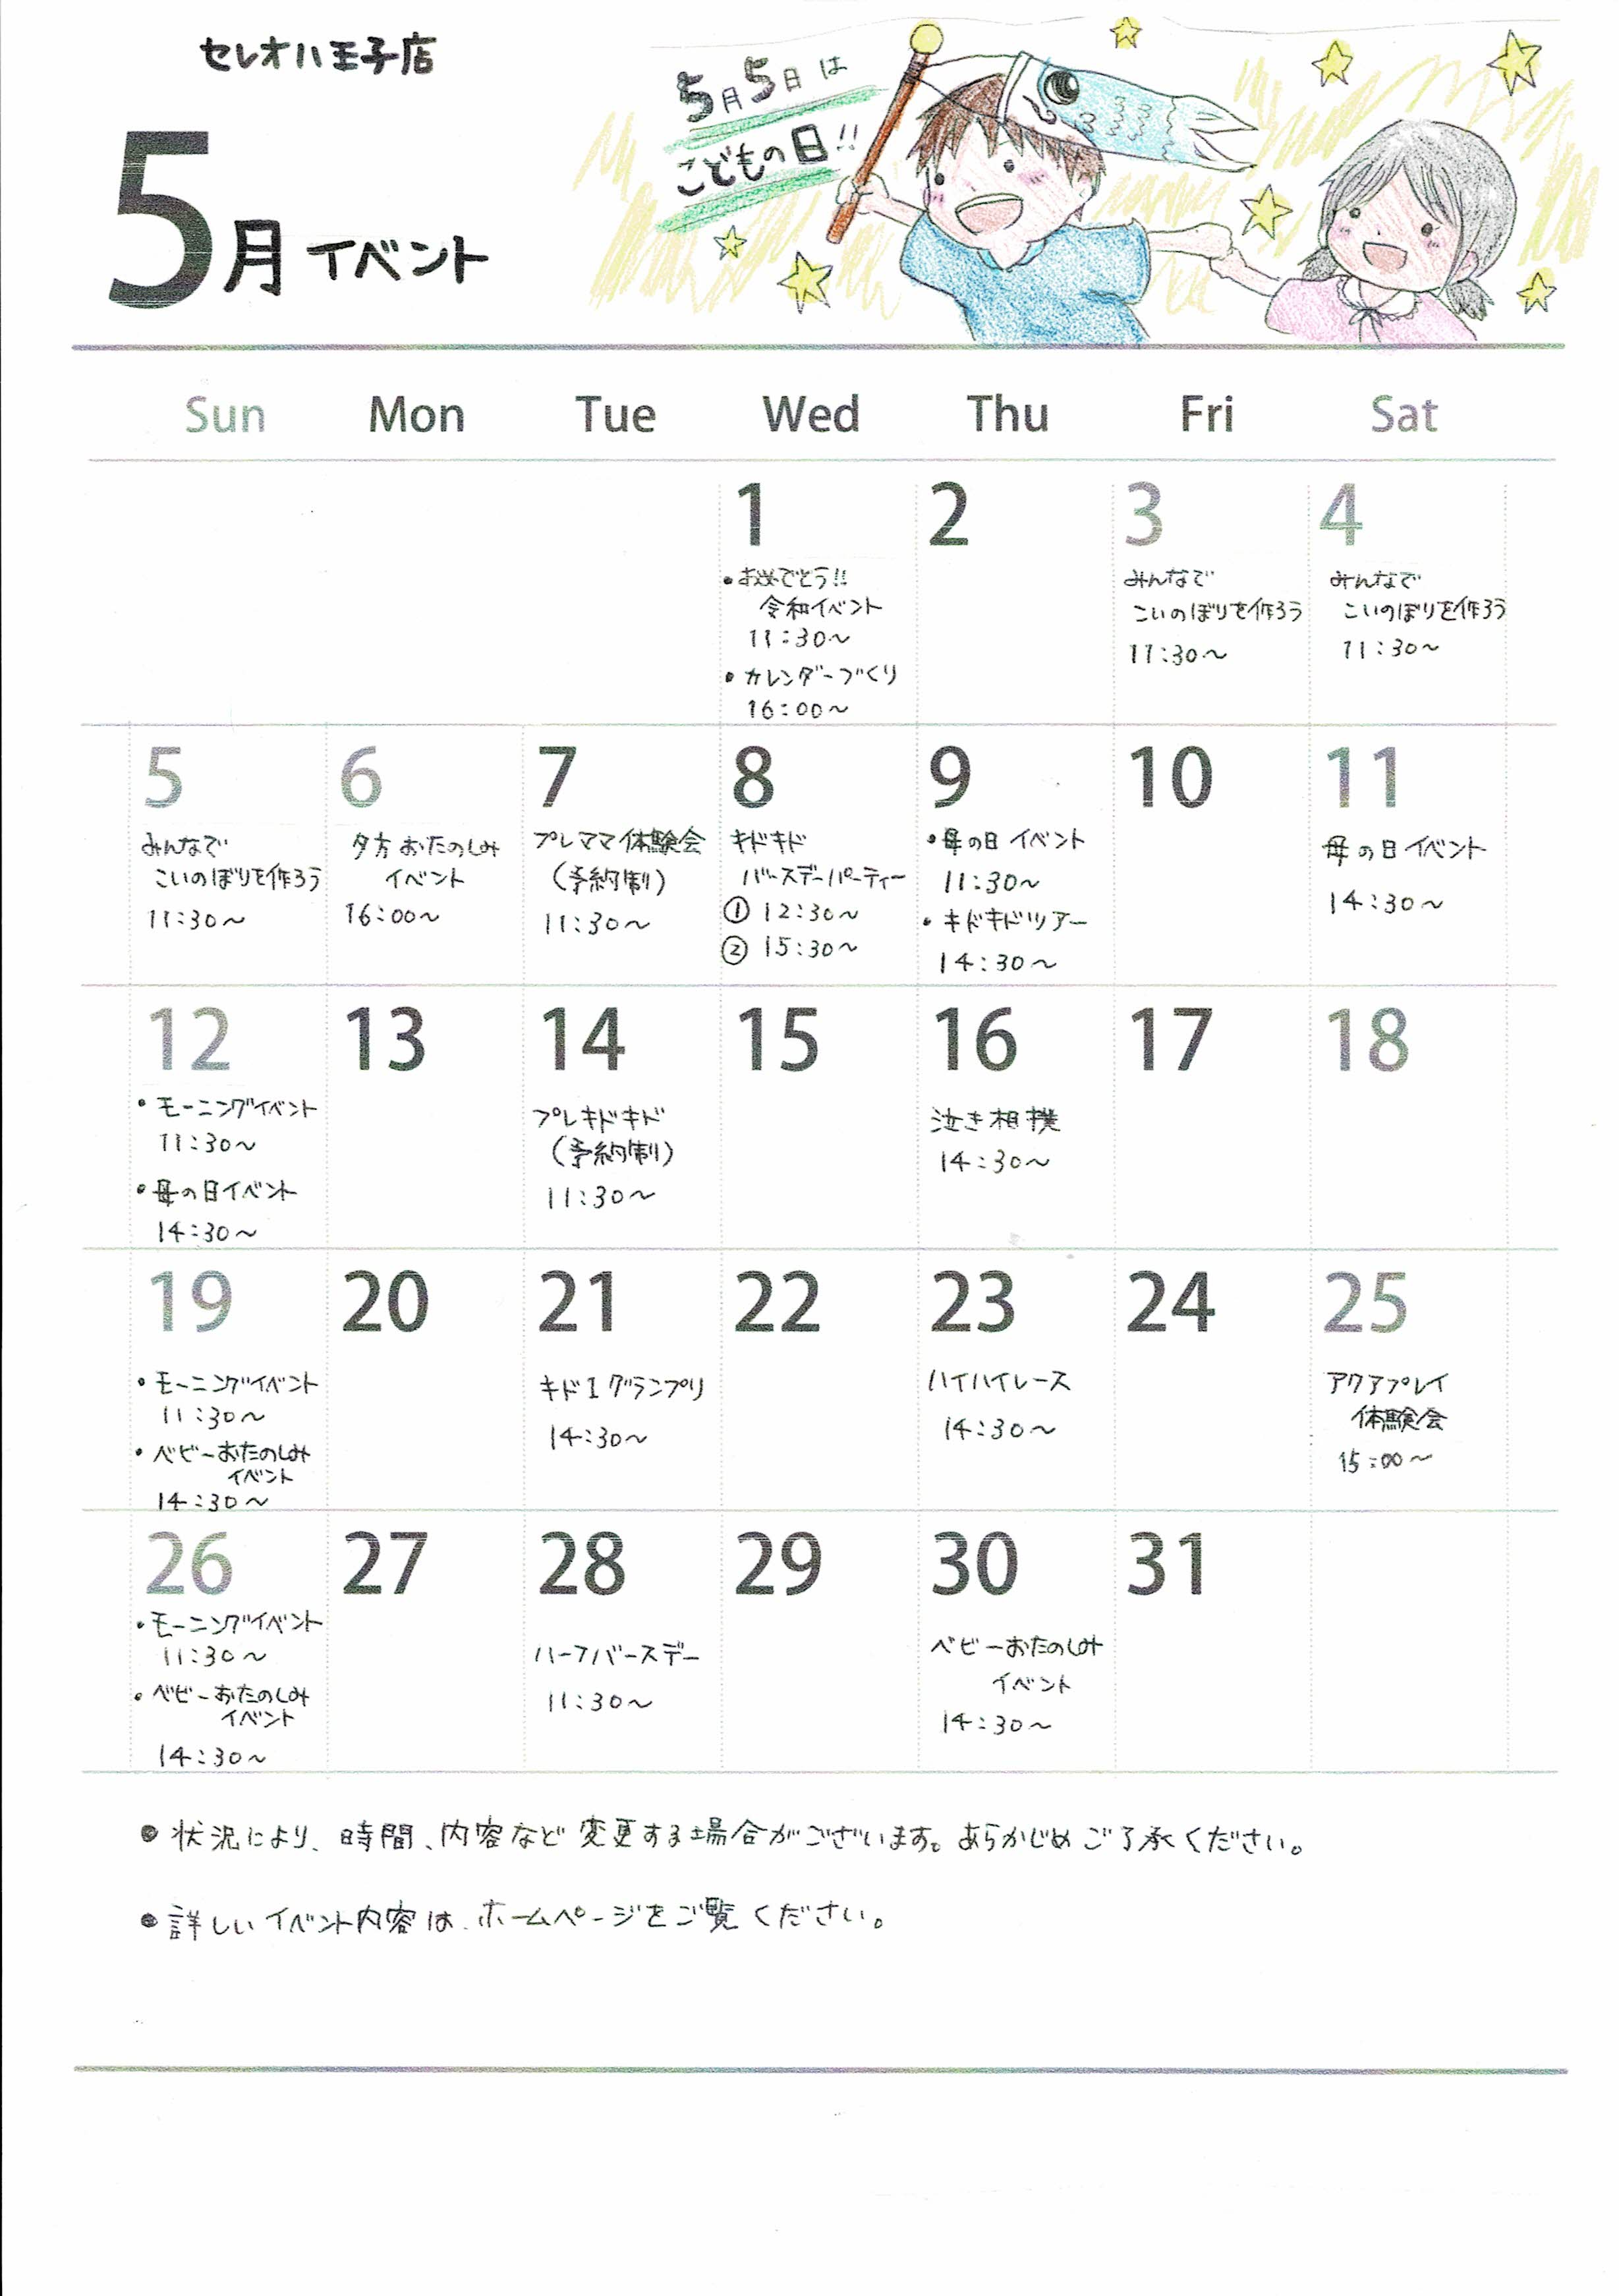 ☆5月のイベントカレンダー☆